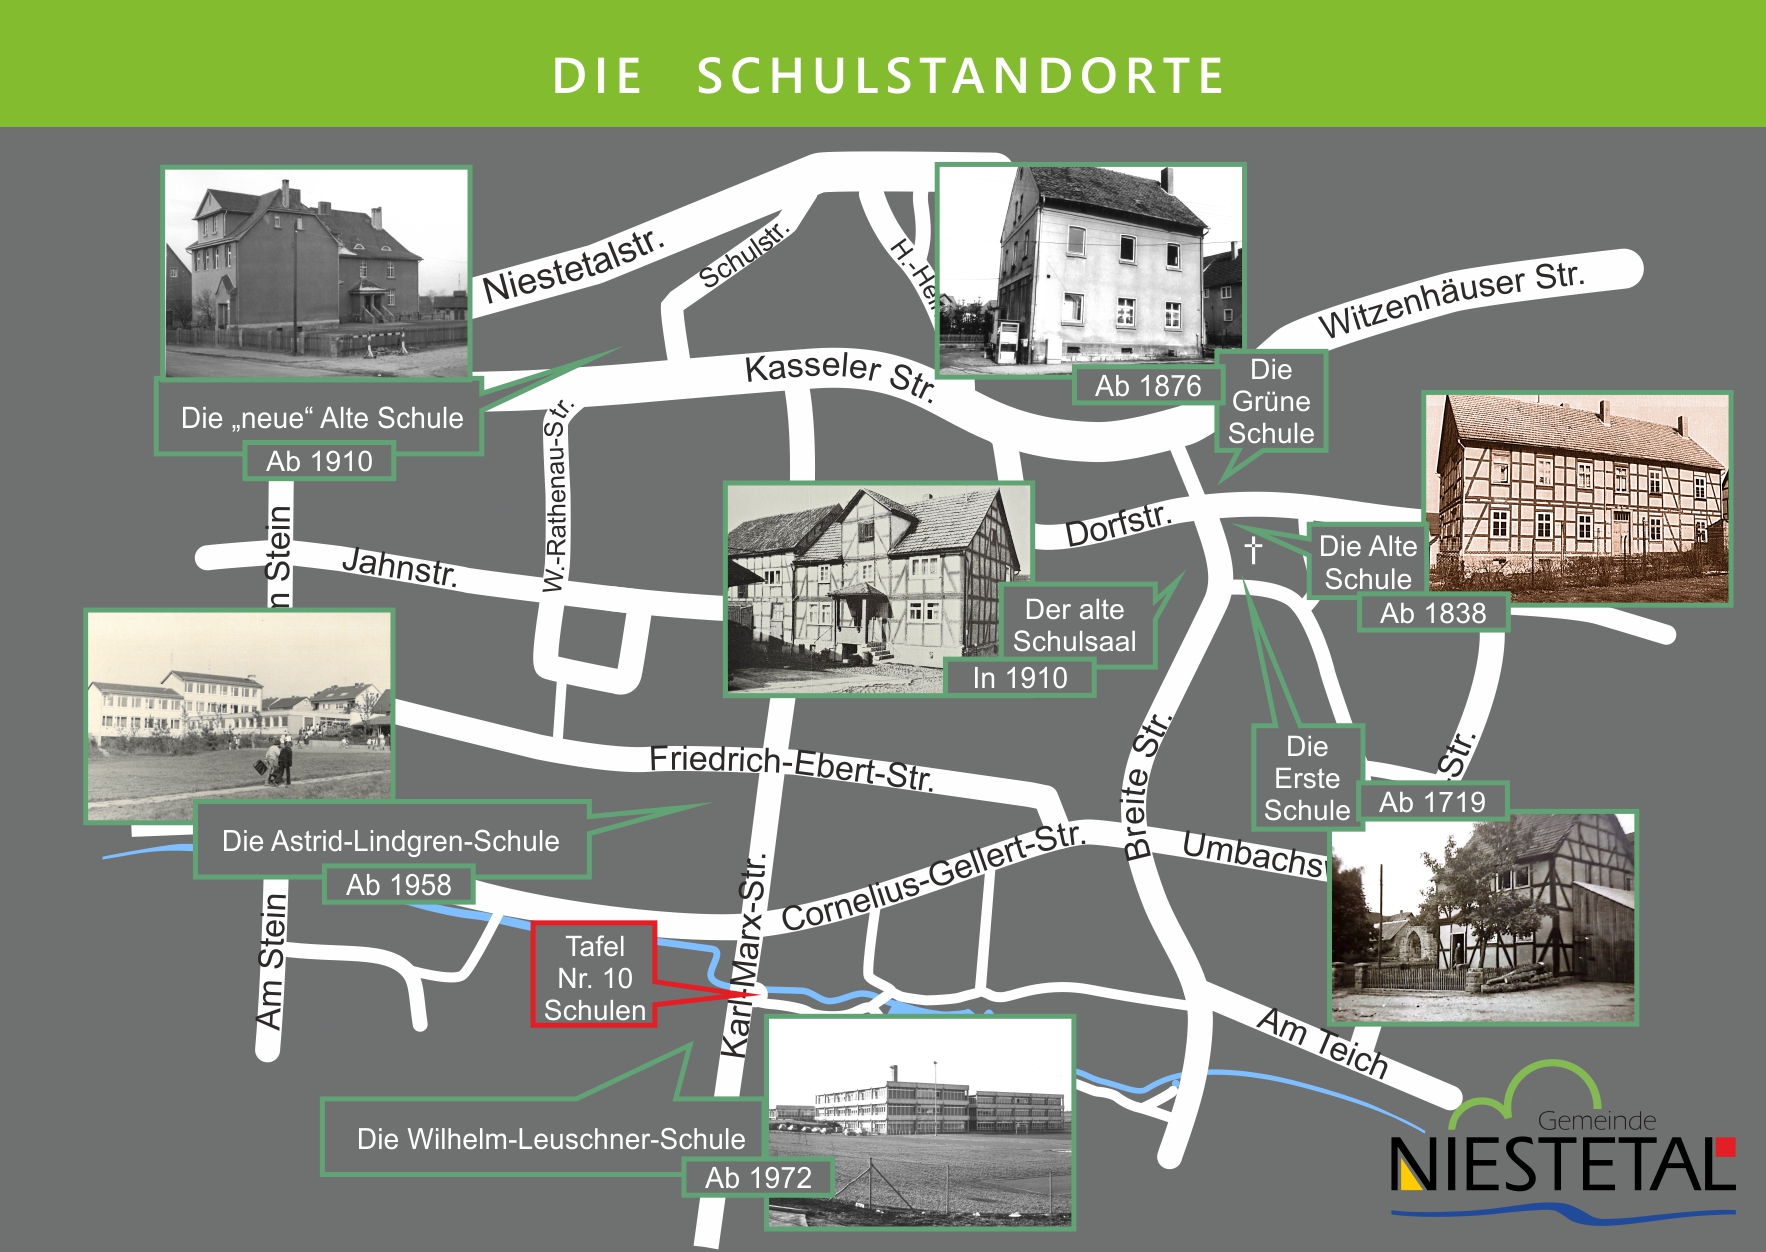 Die Standorte der Schulen im Ort, mit Bildern und dem Standort der Tafel Nr. 10 - Schulen am Brunnen der Karl-Marx-Str.